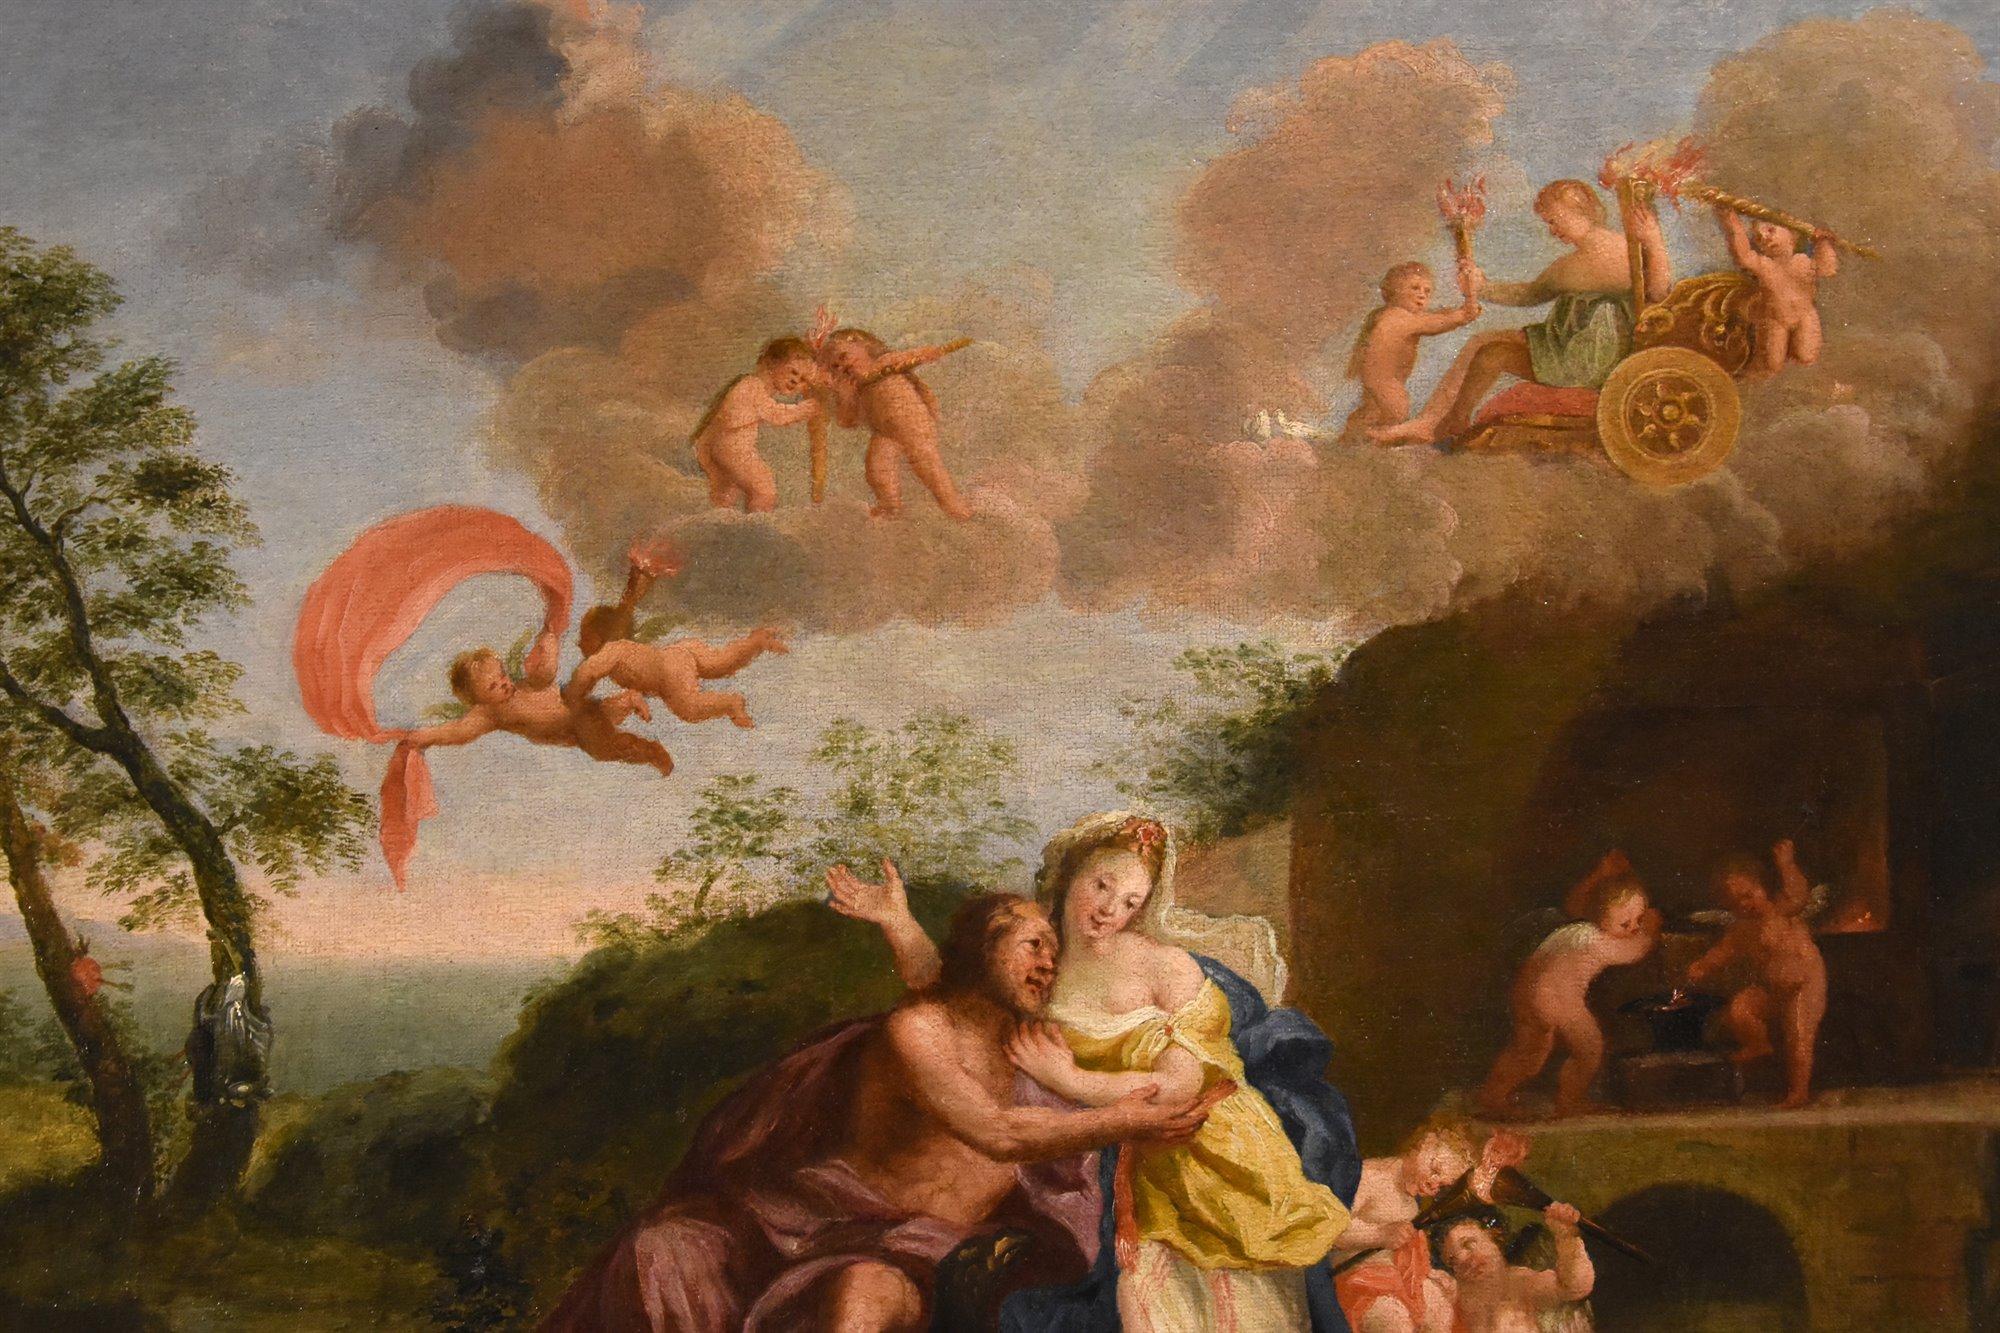 Mars Venus Albani Paint Oil on canvas 17th Century Old master Mythological For Sale 6